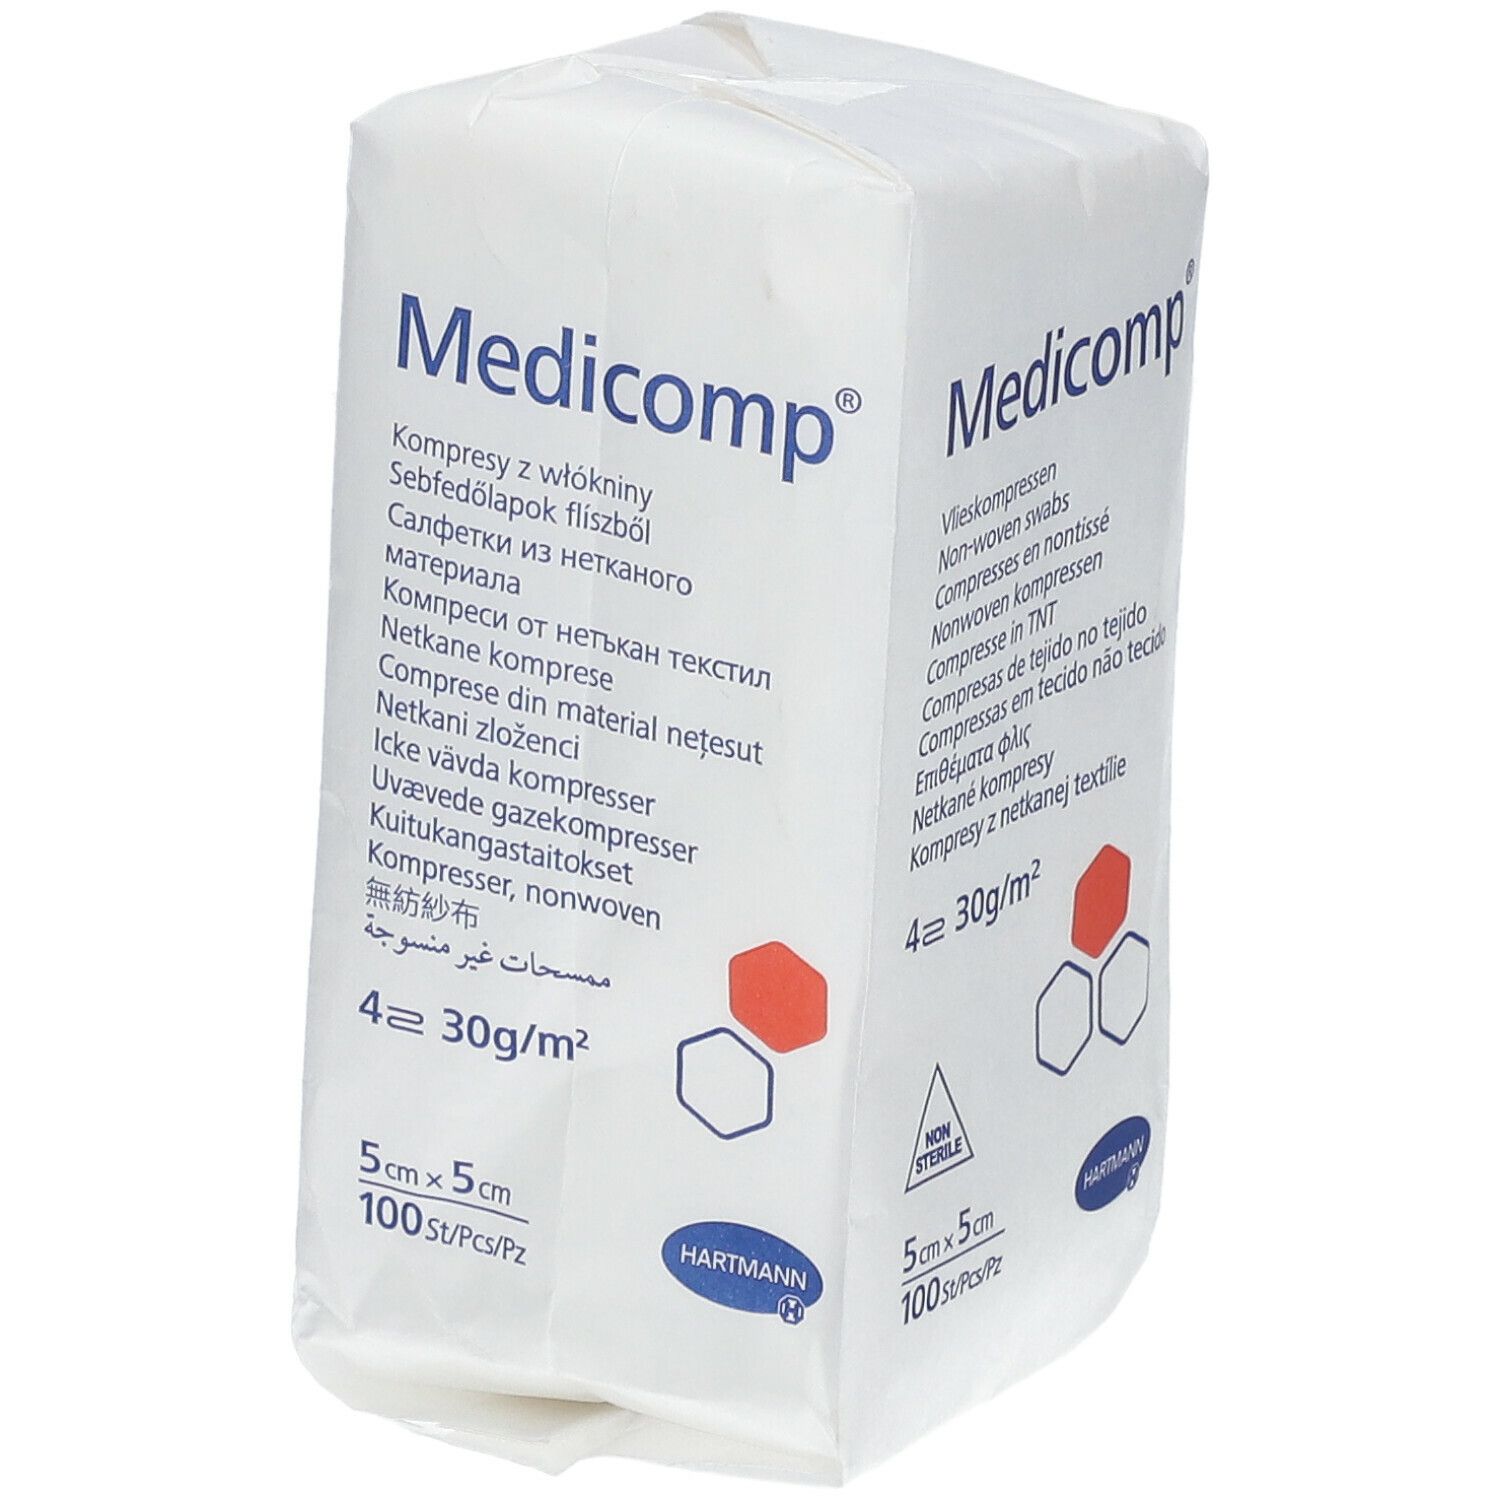 Hartmann Medicomp® 4 Strati Non Sterili 5 x 5 cm